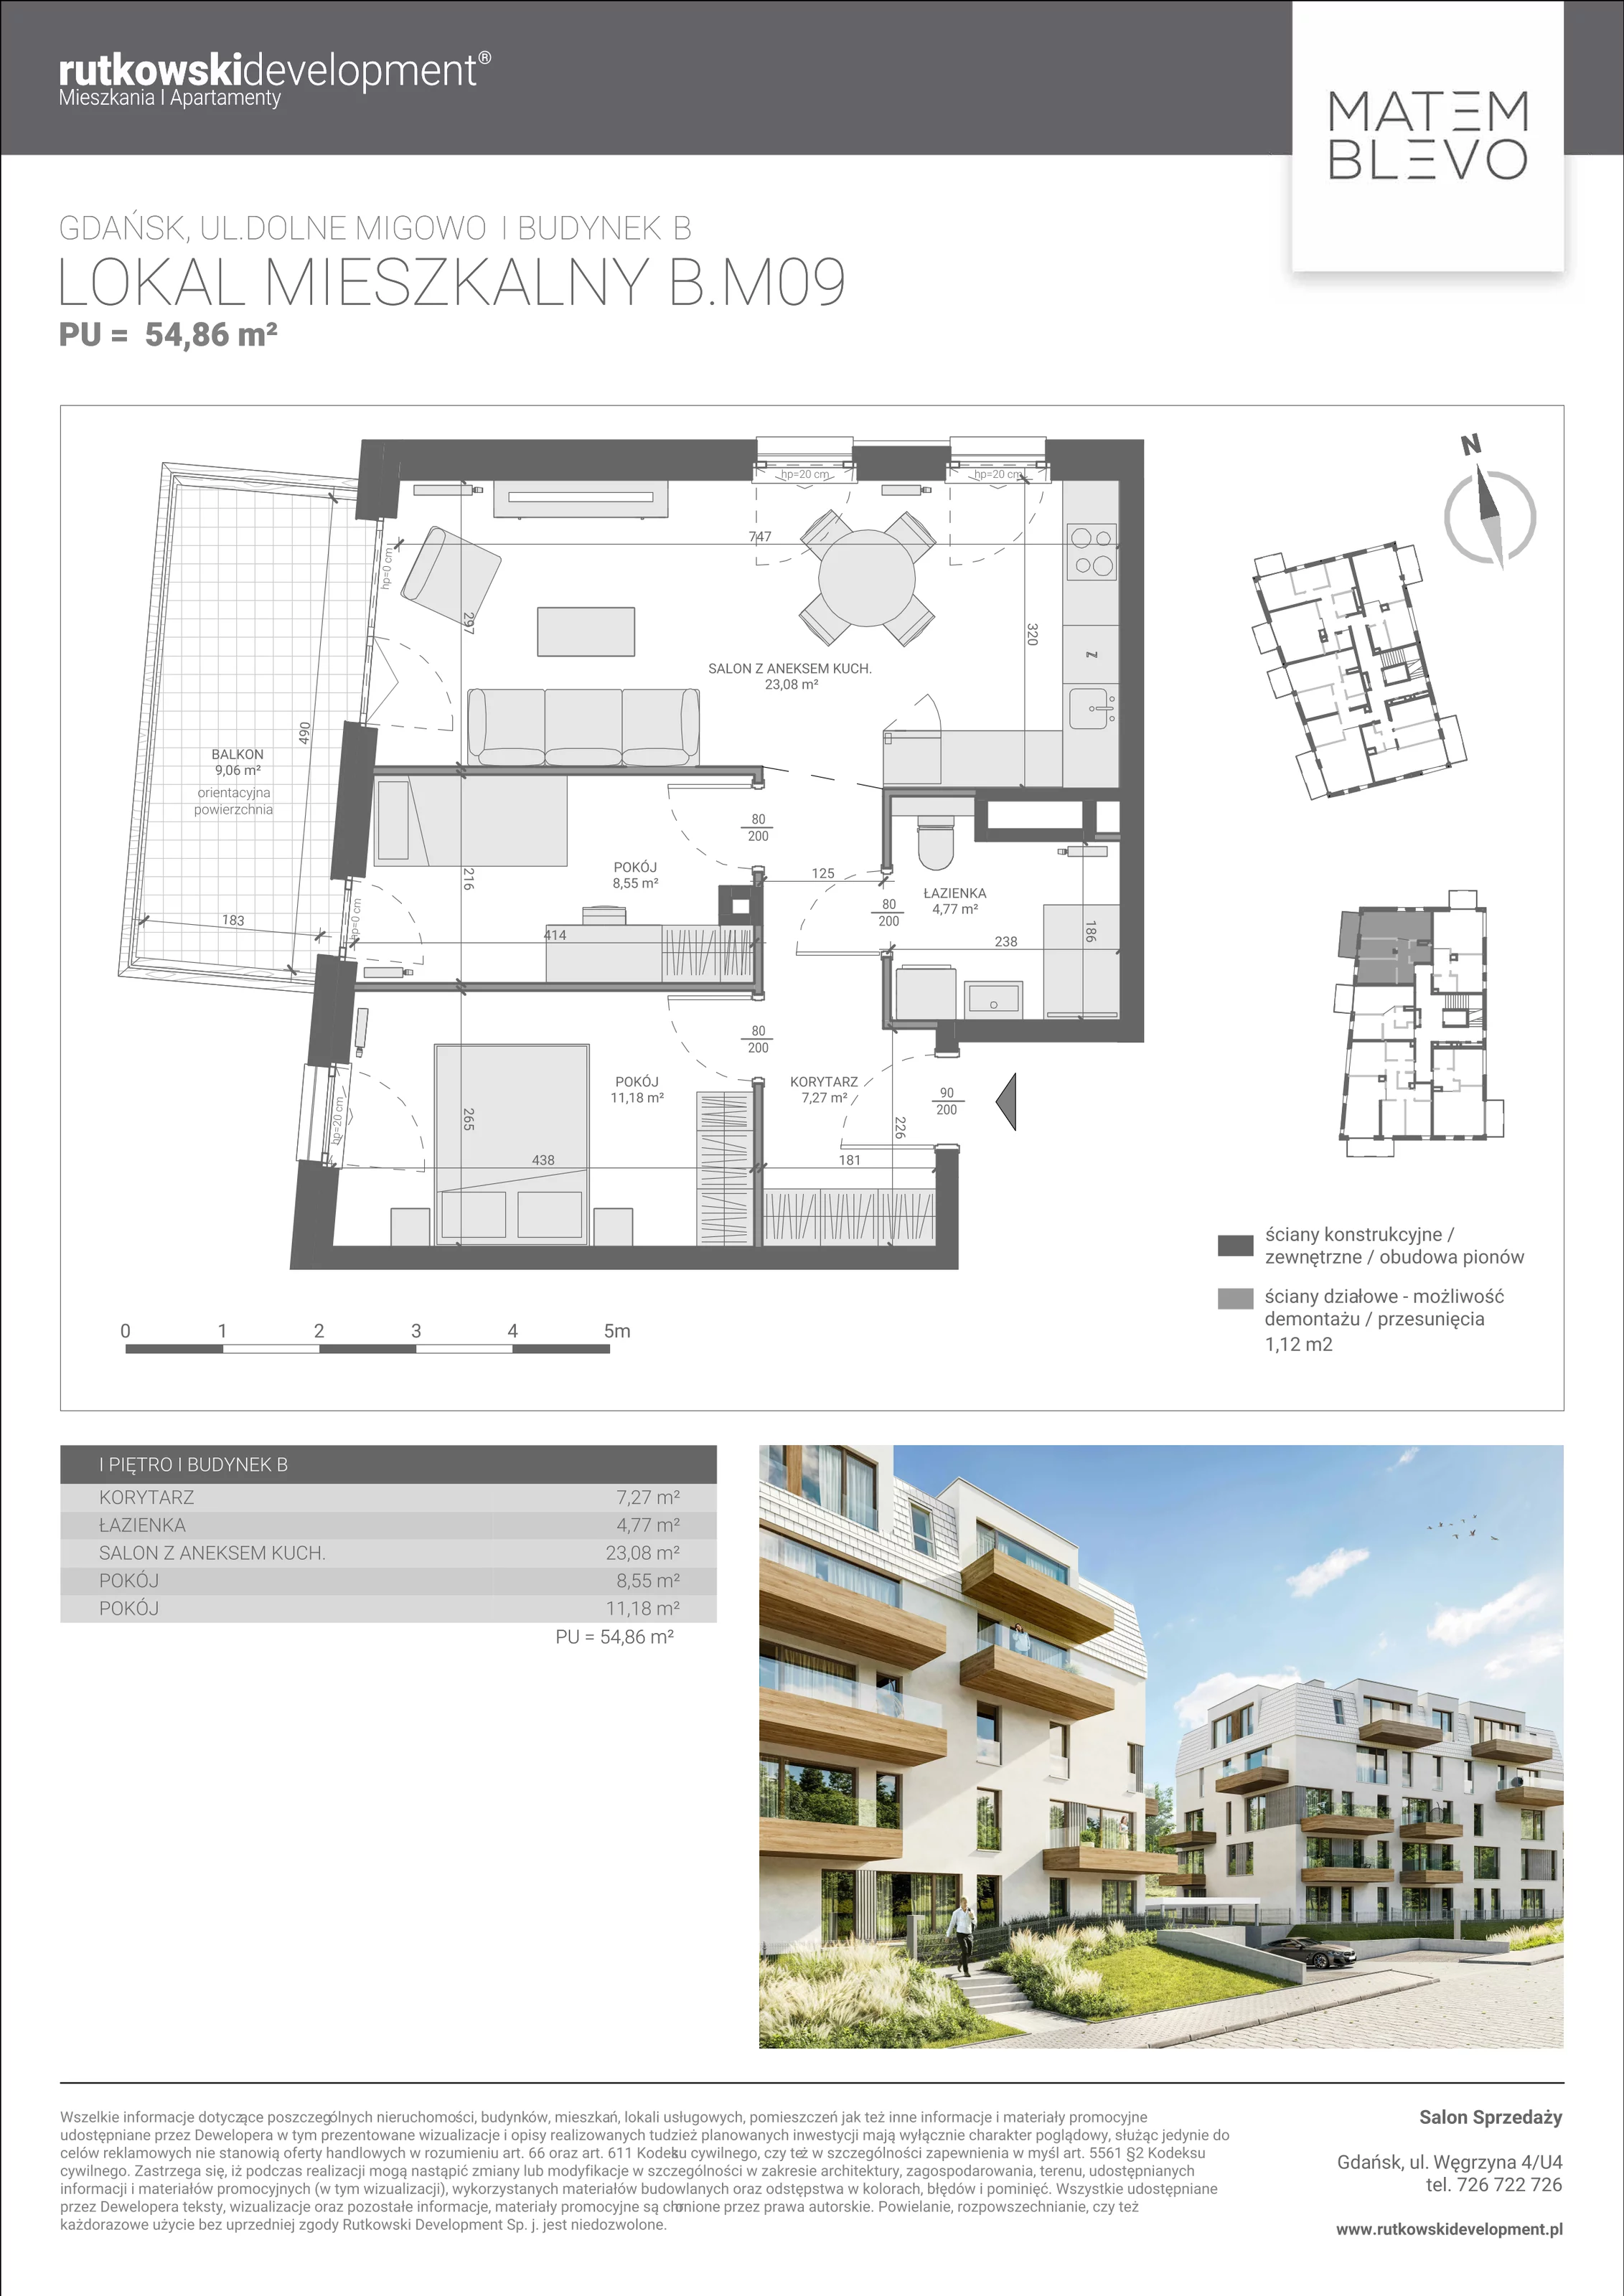 Mieszkanie 54,85 m², piętro 1, oferta nr B.M09, Matemblevo, Gdańsk, Brętowo, ul. Dolne Migowo 23 D